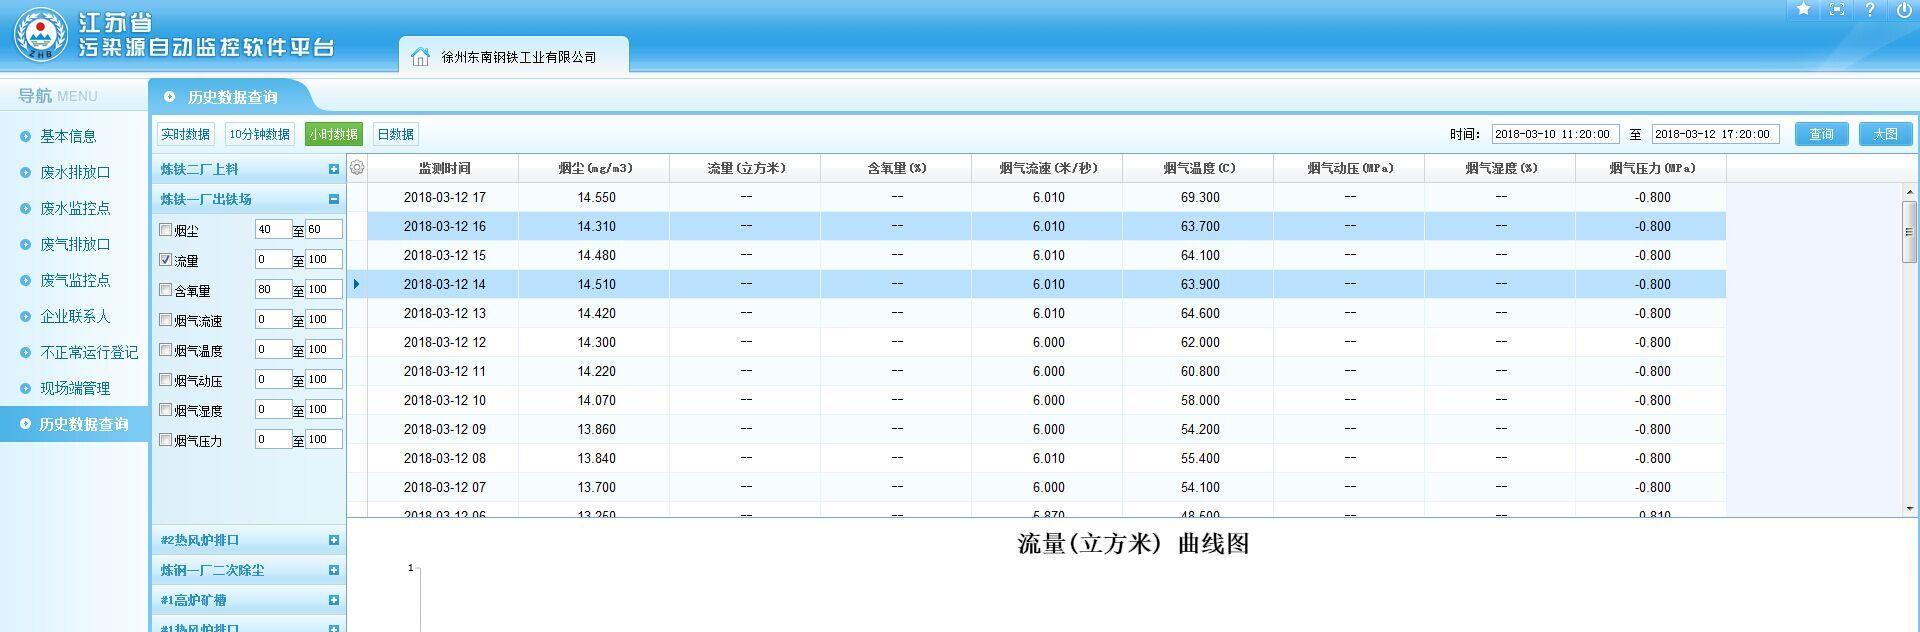 江苏省污染源自动监控软件平台 环保信息公开